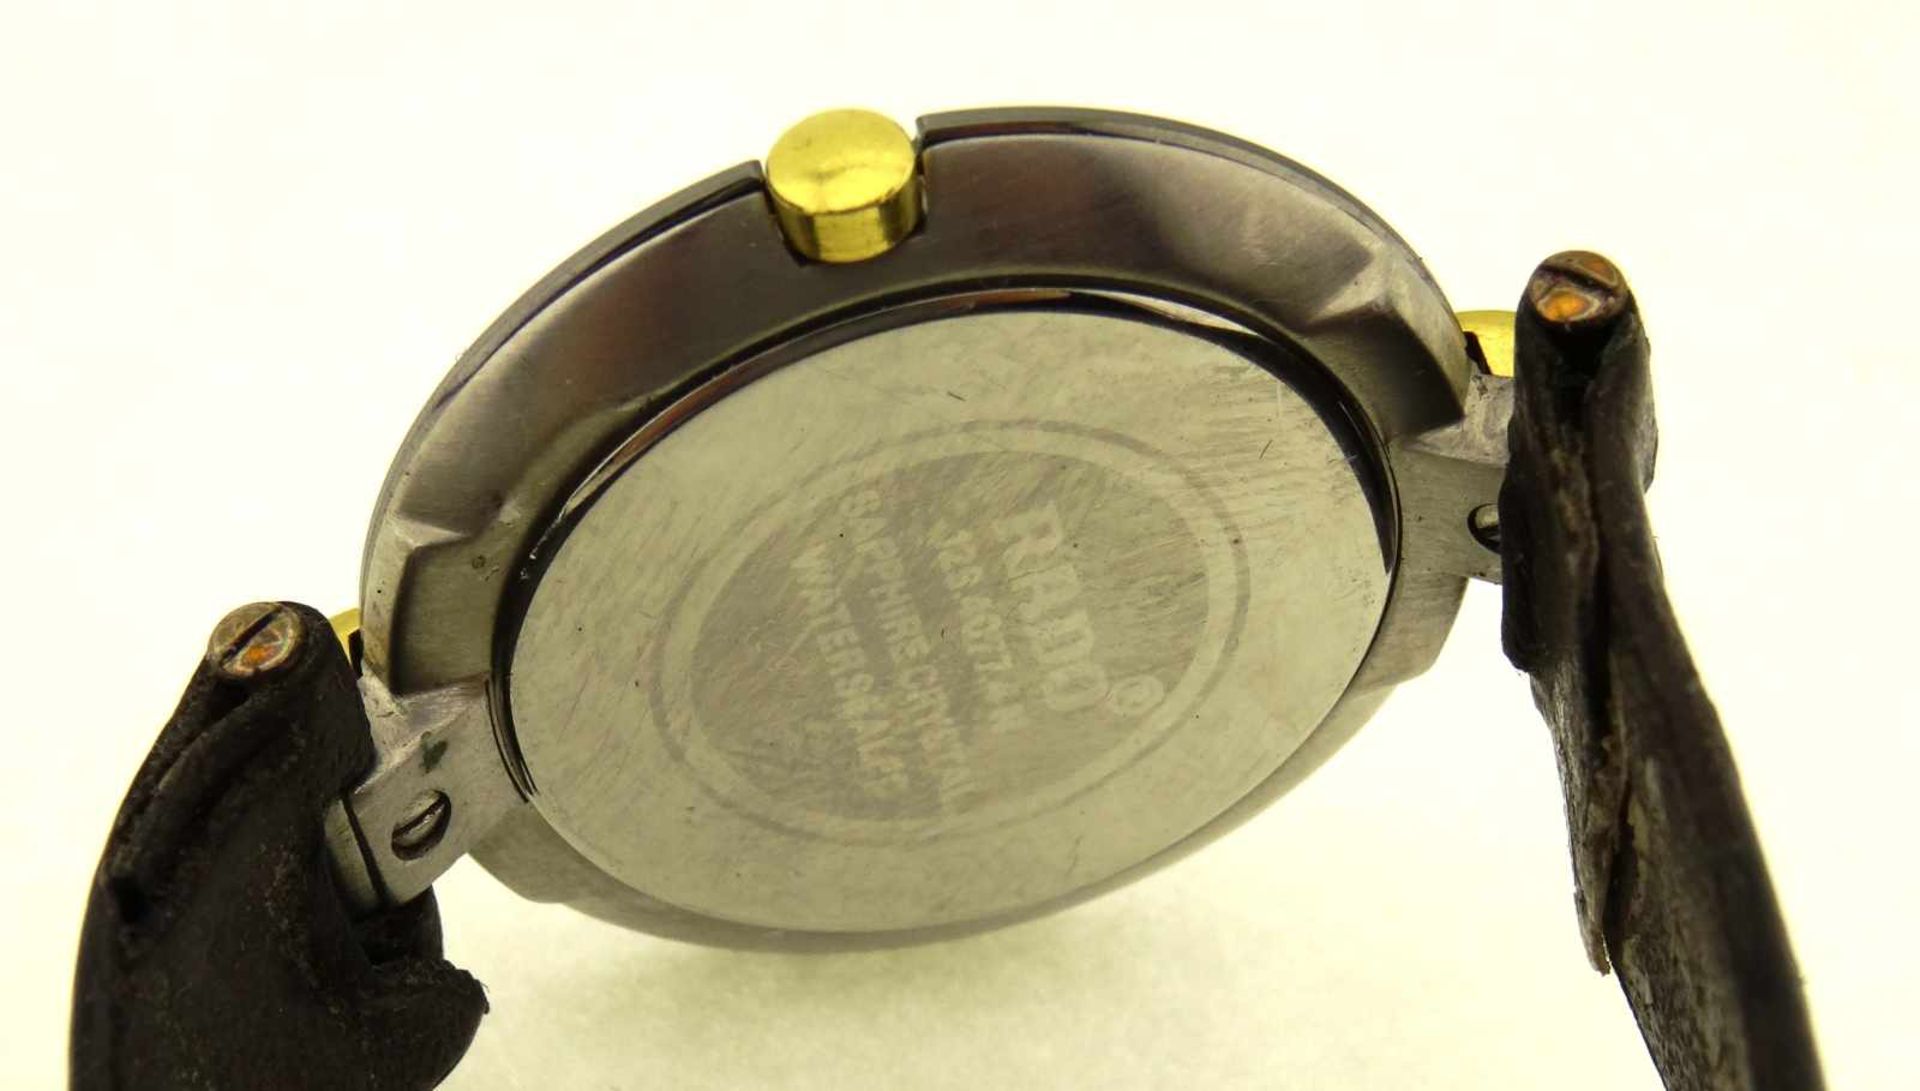 Rado Armbanduhr Medium Modell 129.4077.4N, Durchmesser 30mm, mit neuem Originalglas ( Safir ), und - Bild 3 aus 3